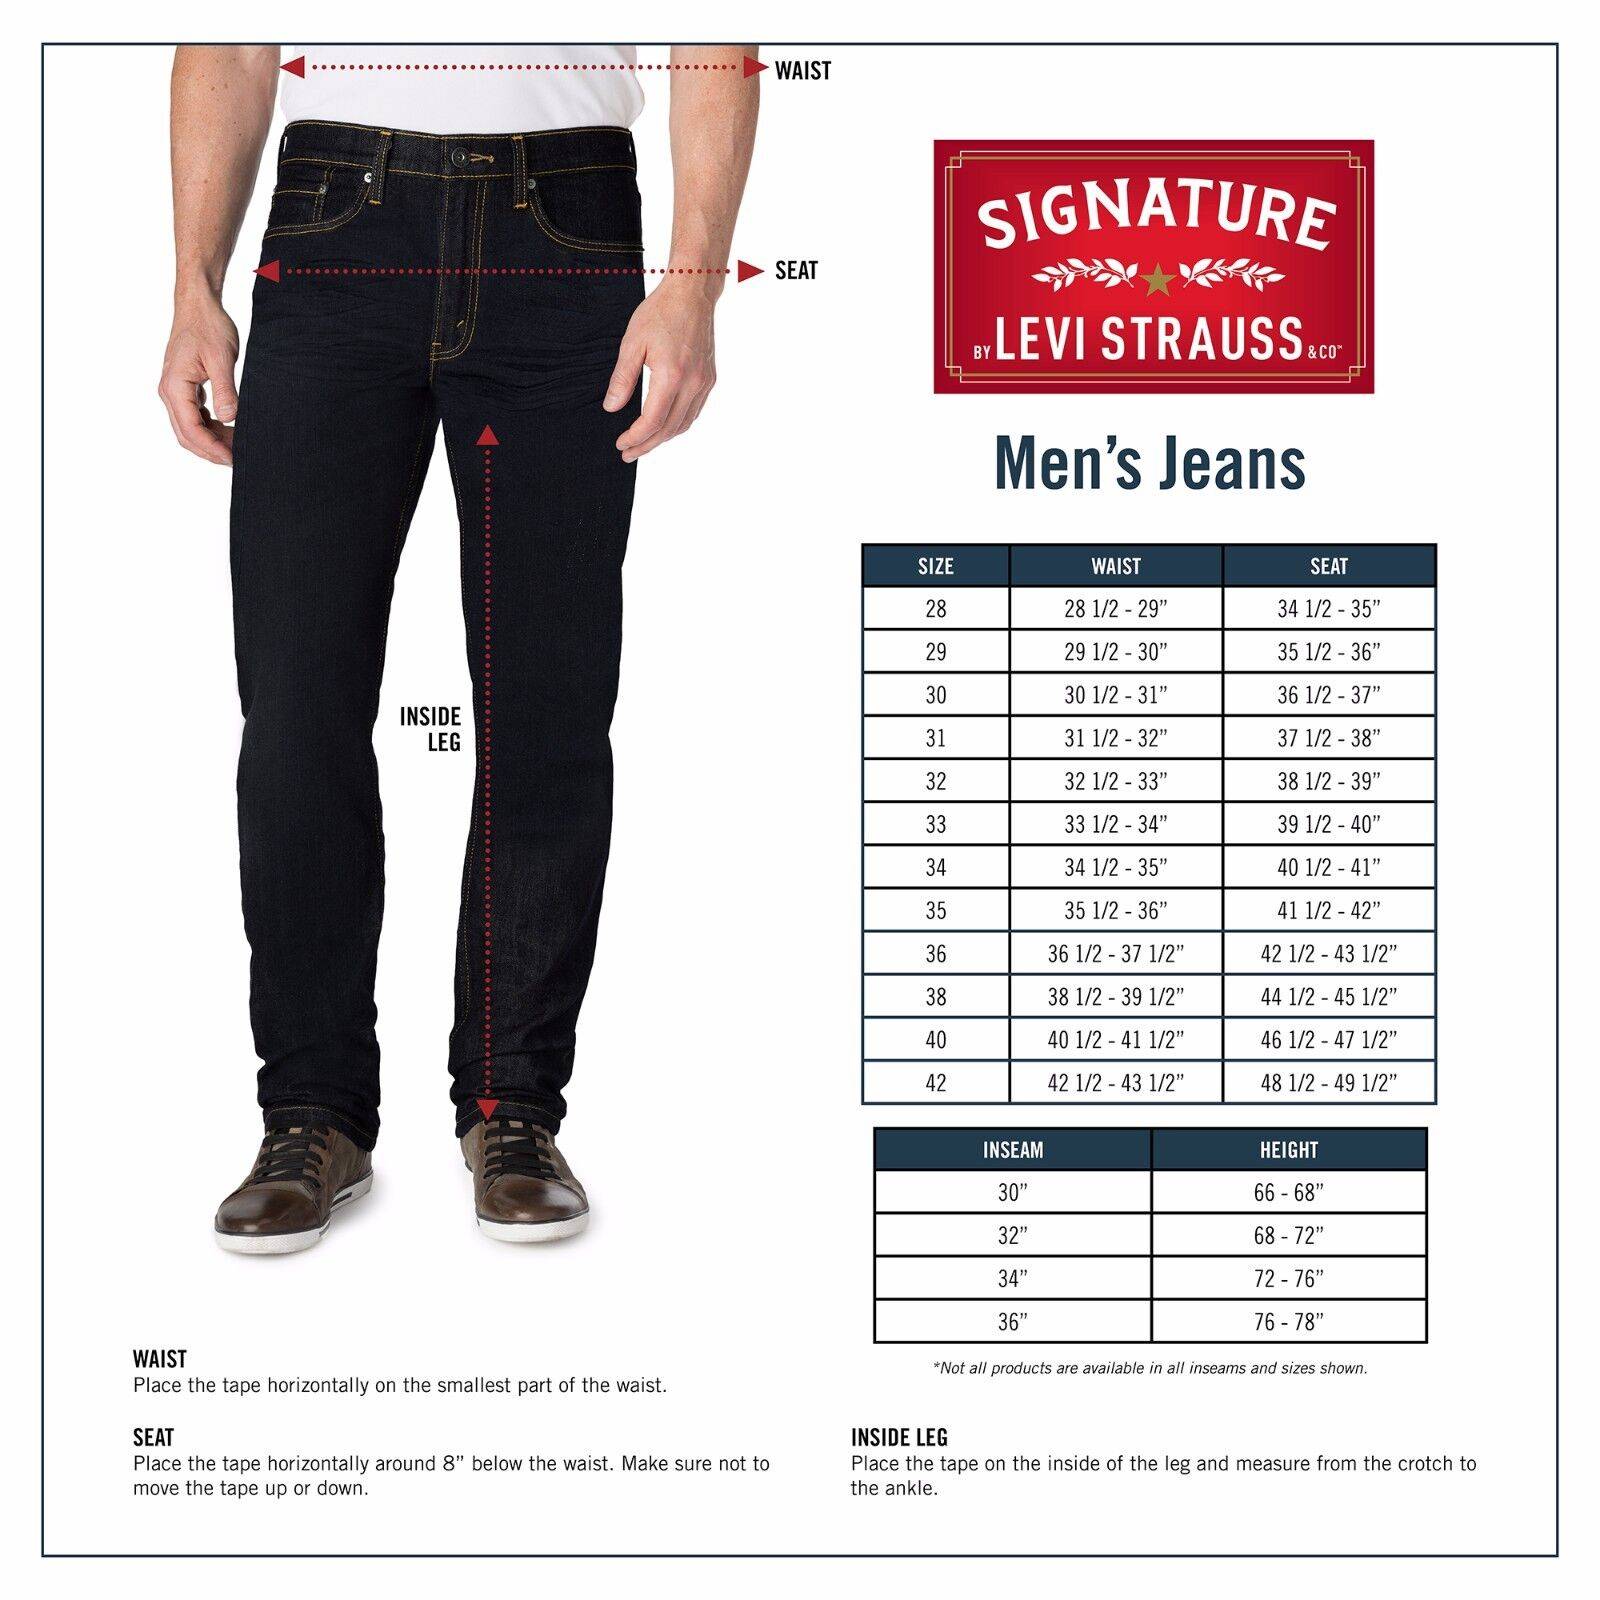 Levis джинсы как выбрать размер